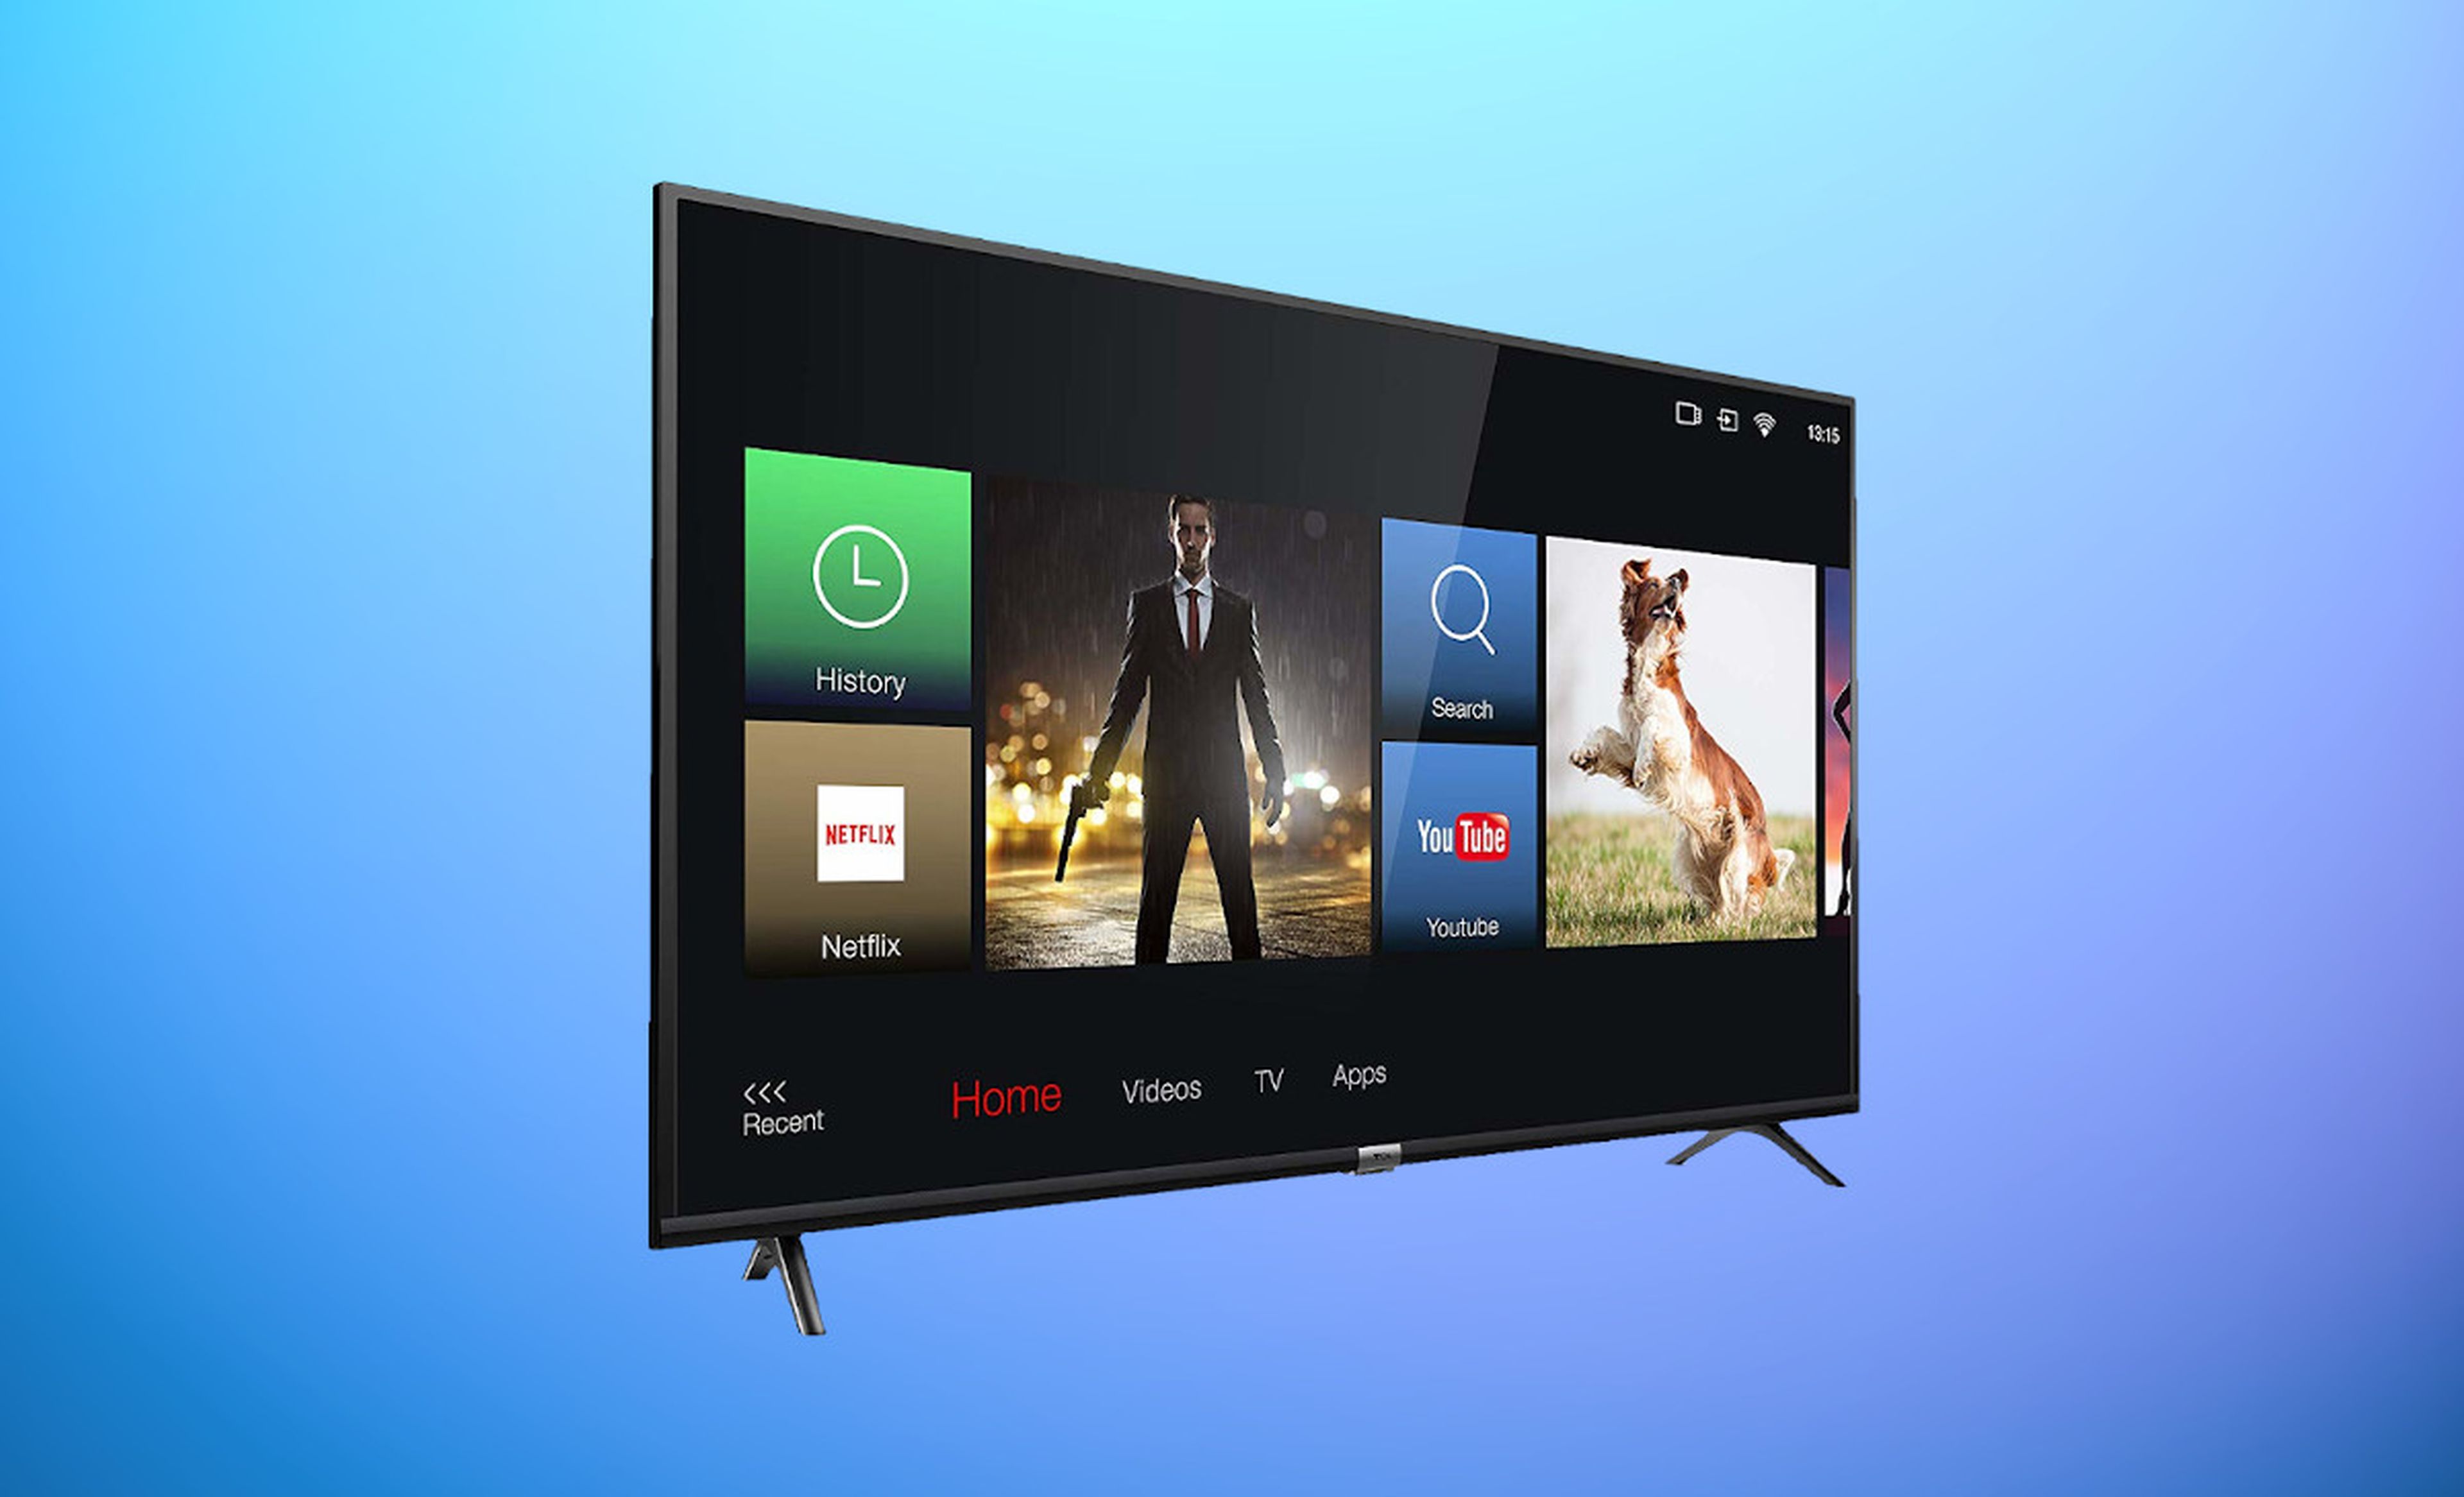 4K, 50 y Android TV: esta tele lo tiene todo, ¡y cuesta 299 €!